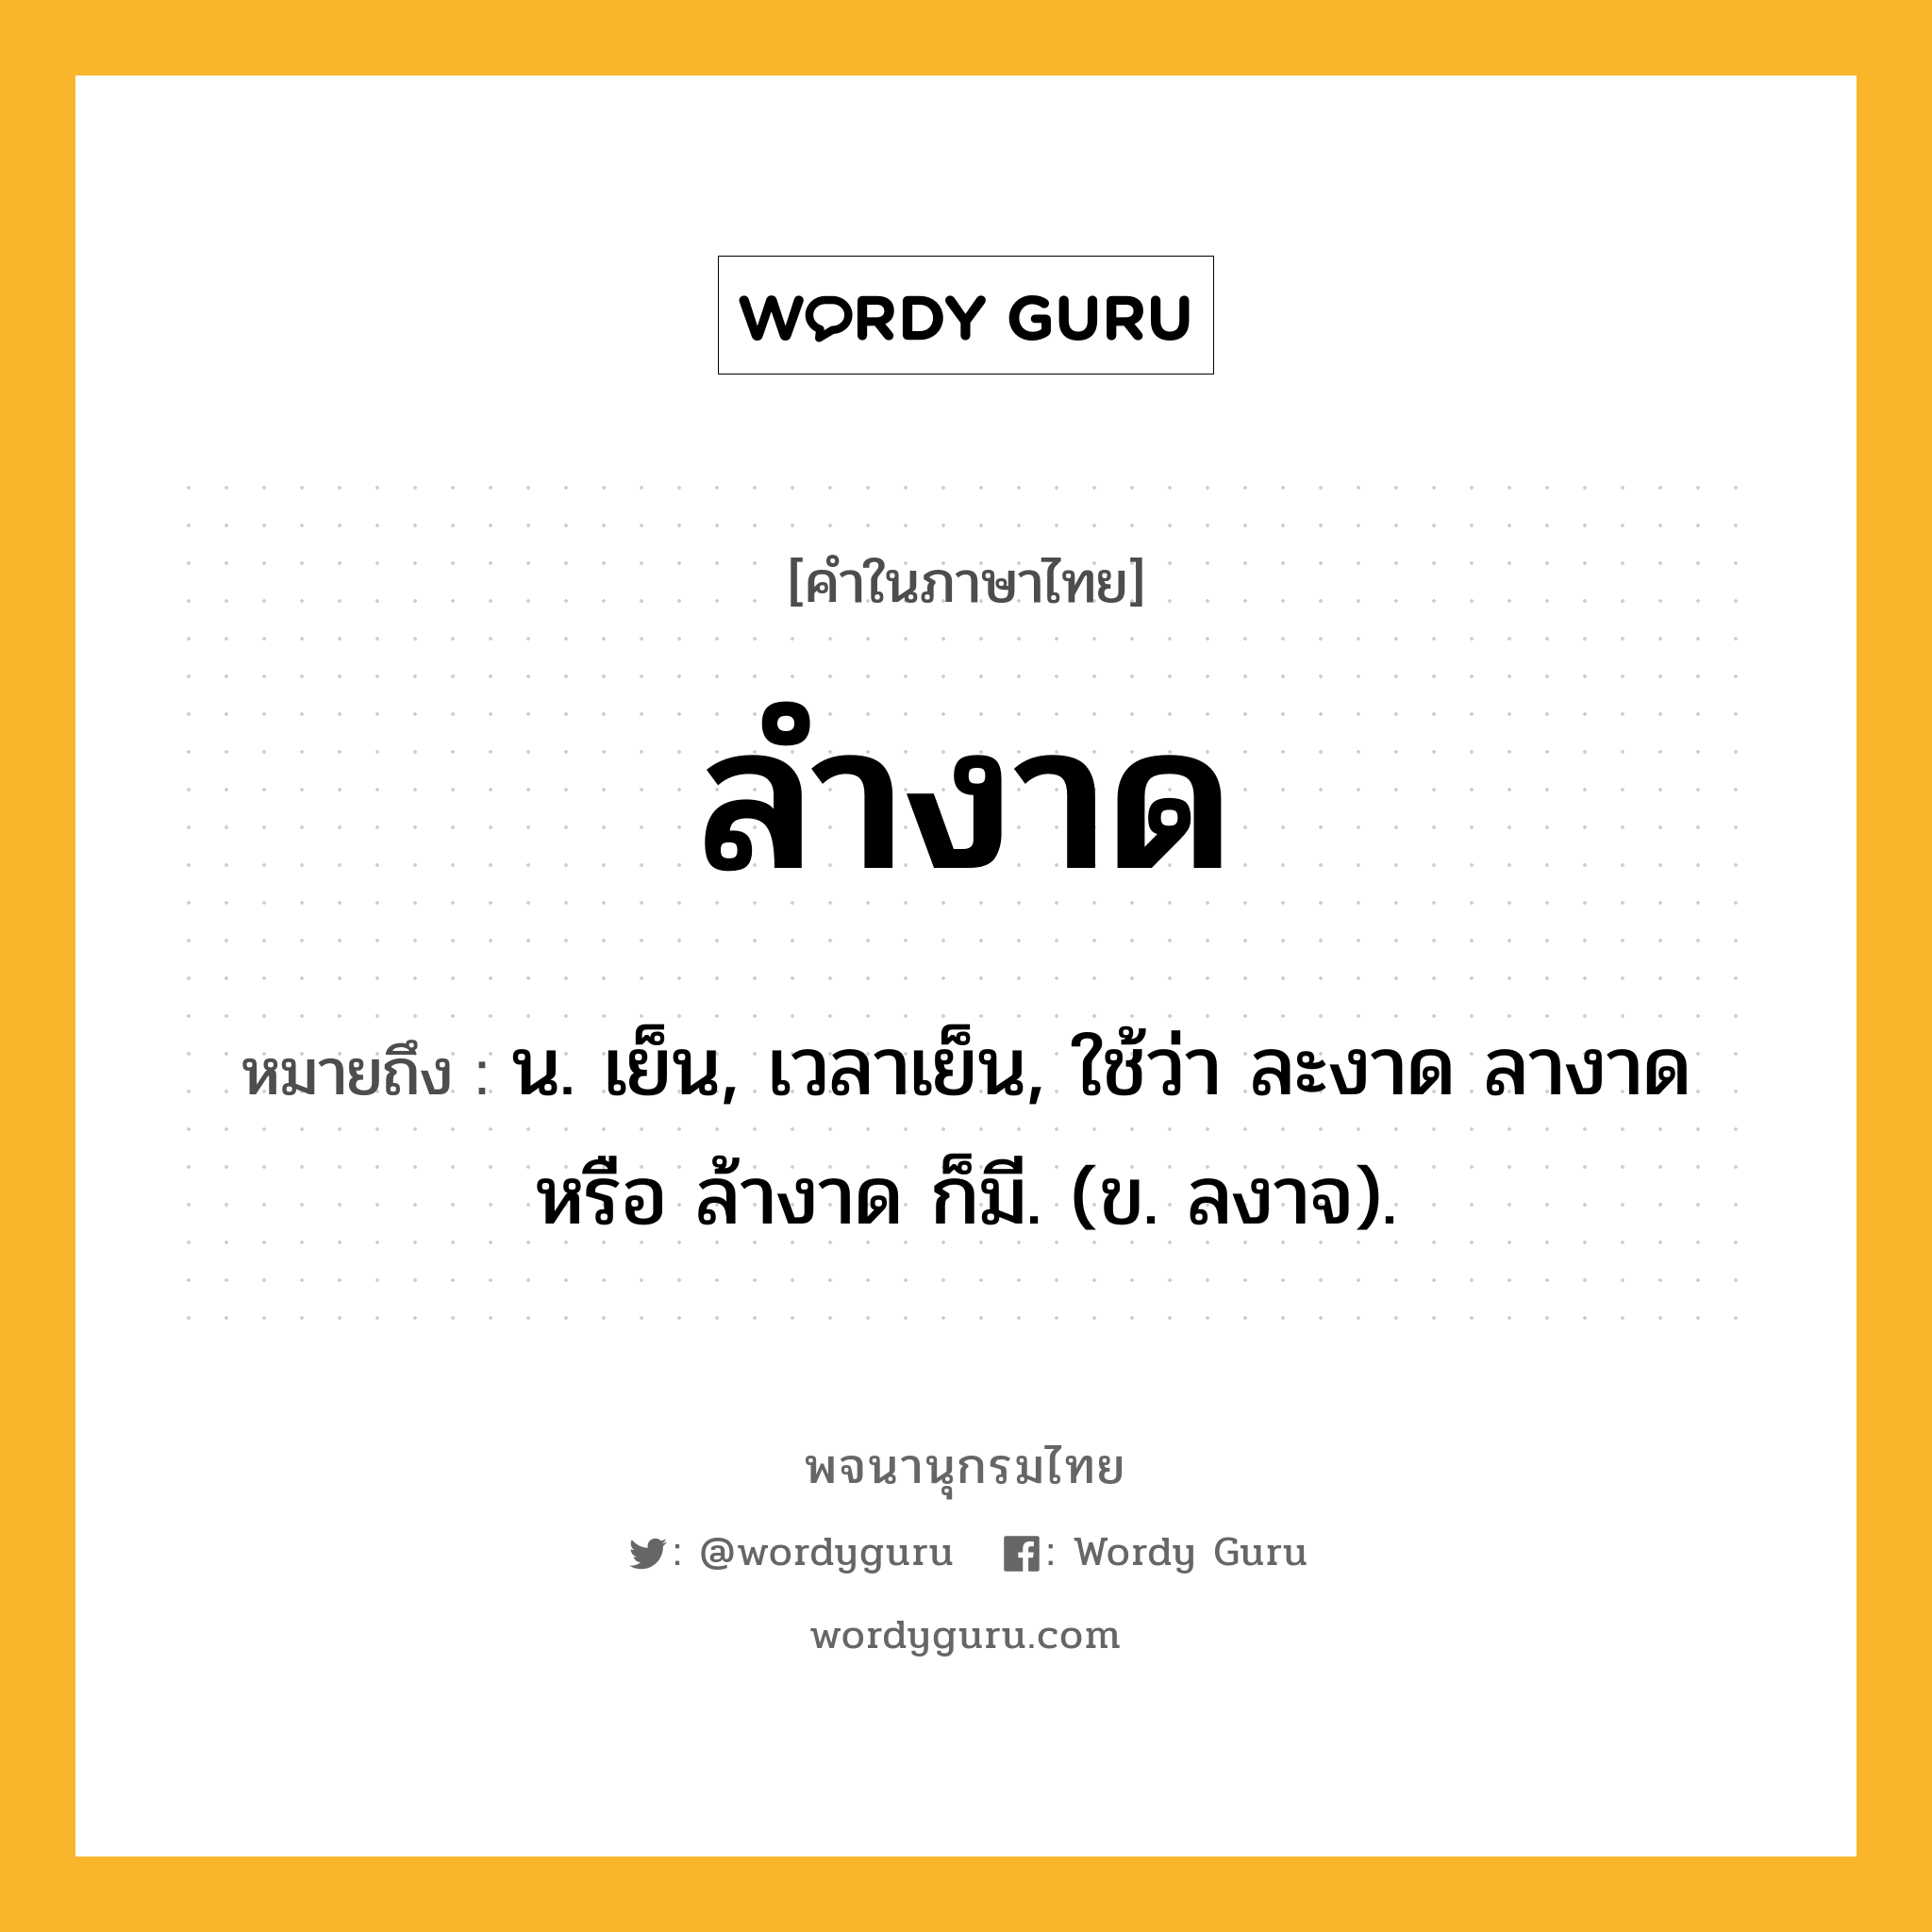 ลำงาด ความหมาย หมายถึงอะไร?, คำในภาษาไทย ลำงาด หมายถึง น. เย็น, เวลาเย็น, ใช้ว่า ละงาด ลางาด หรือ ล้างาด ก็มี. (ข. ลงาจ).